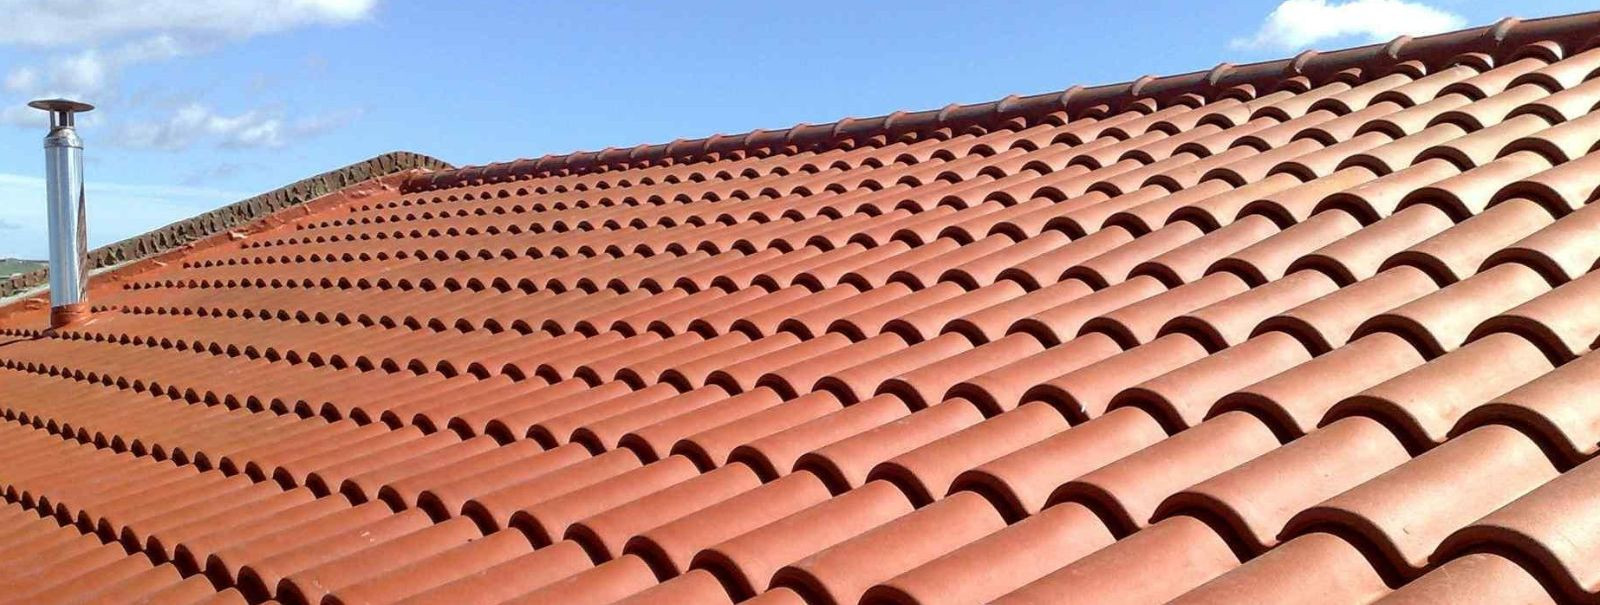 Alates meie asutamisest 1999. aastal on EESTI KATUSEMEISTRID OÜ olnud eesrindlik kvaliteetsete katuse- ja fassaaditööde pakkumisel. Meie teekond algas kohustuse